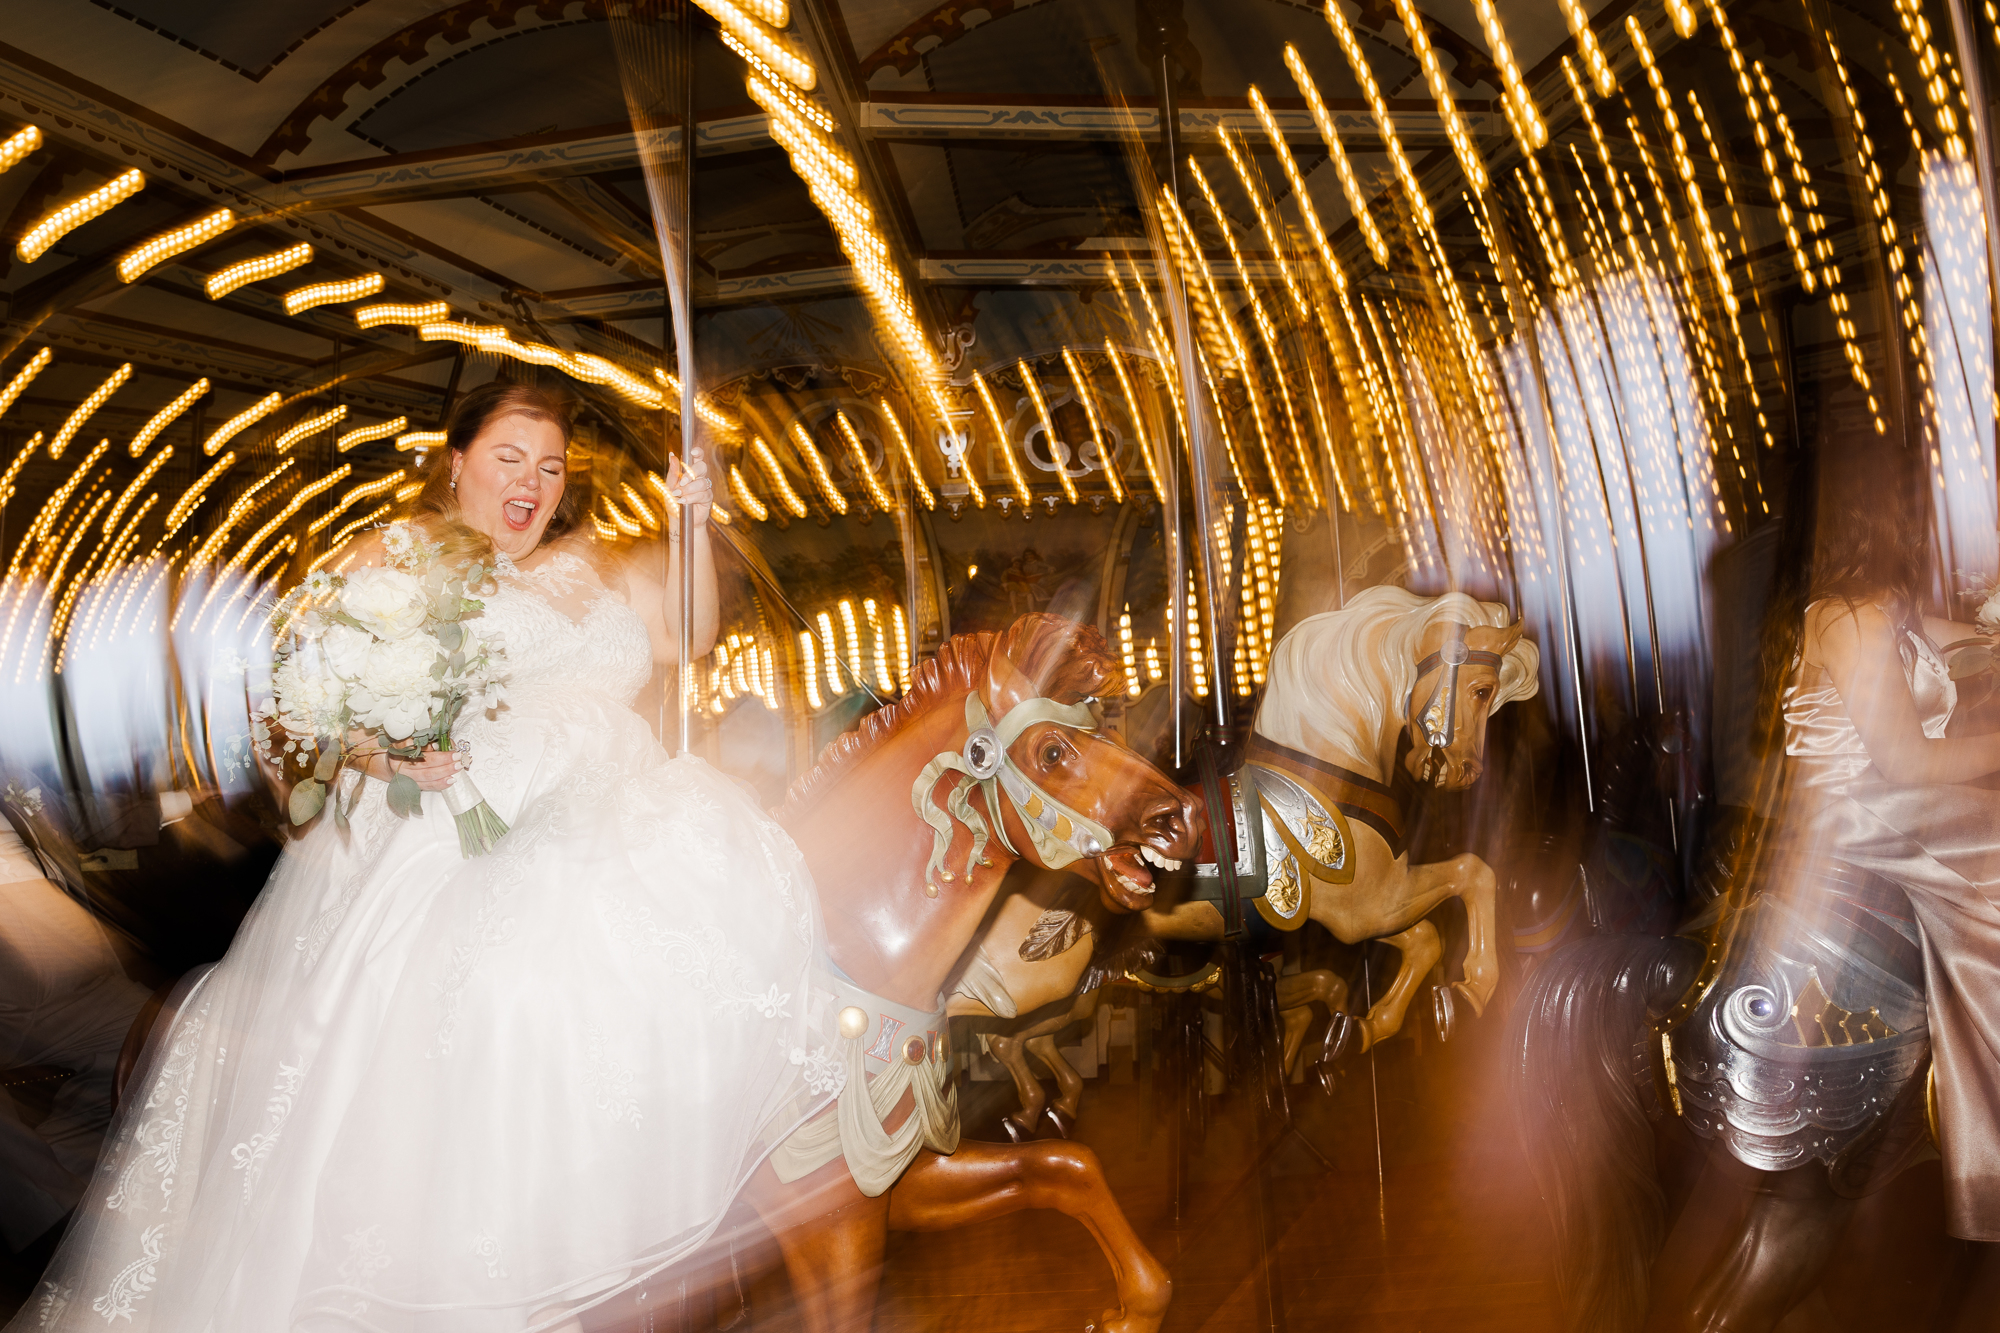 Joyful Jane's Carousel Wedding in New York